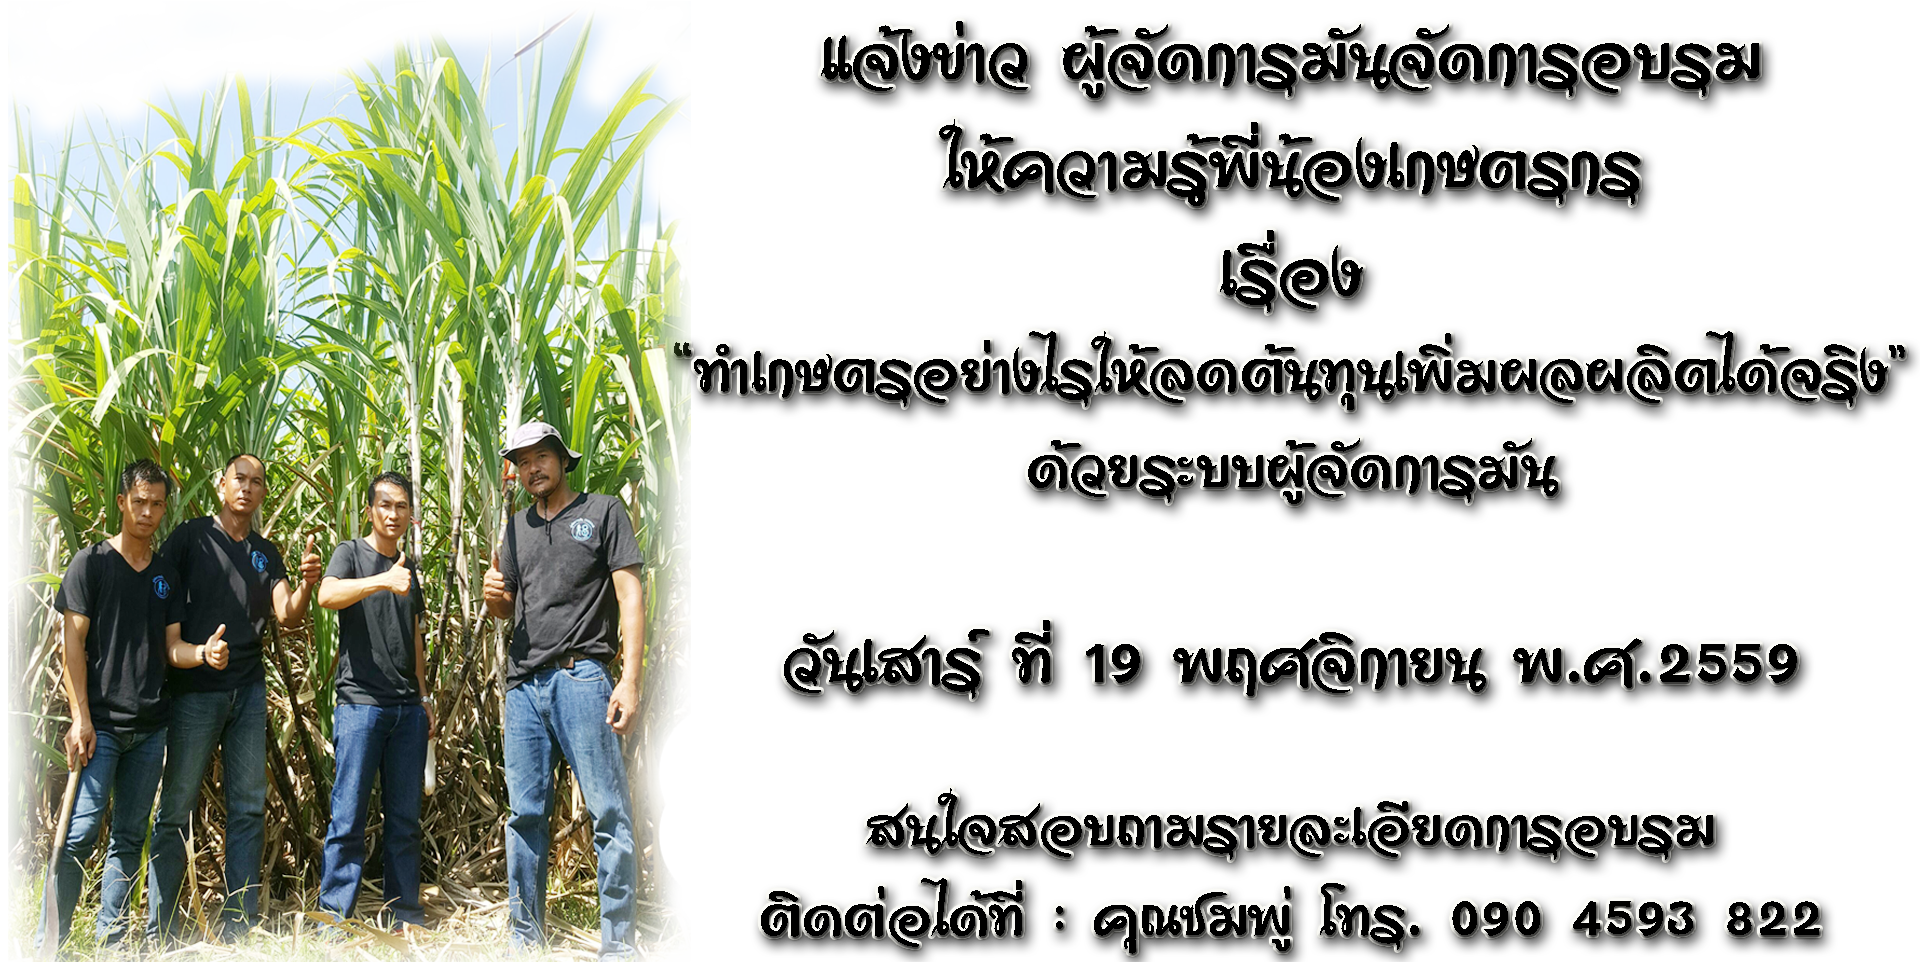 จัดอบรม "ทำเกษตรอย่างไรให้ลดต้นทุนเพิ่มผลผลิตได้จริง ด้วยระบบผู้จัดการมัน" วันที่ 19 พ.ย. 2559